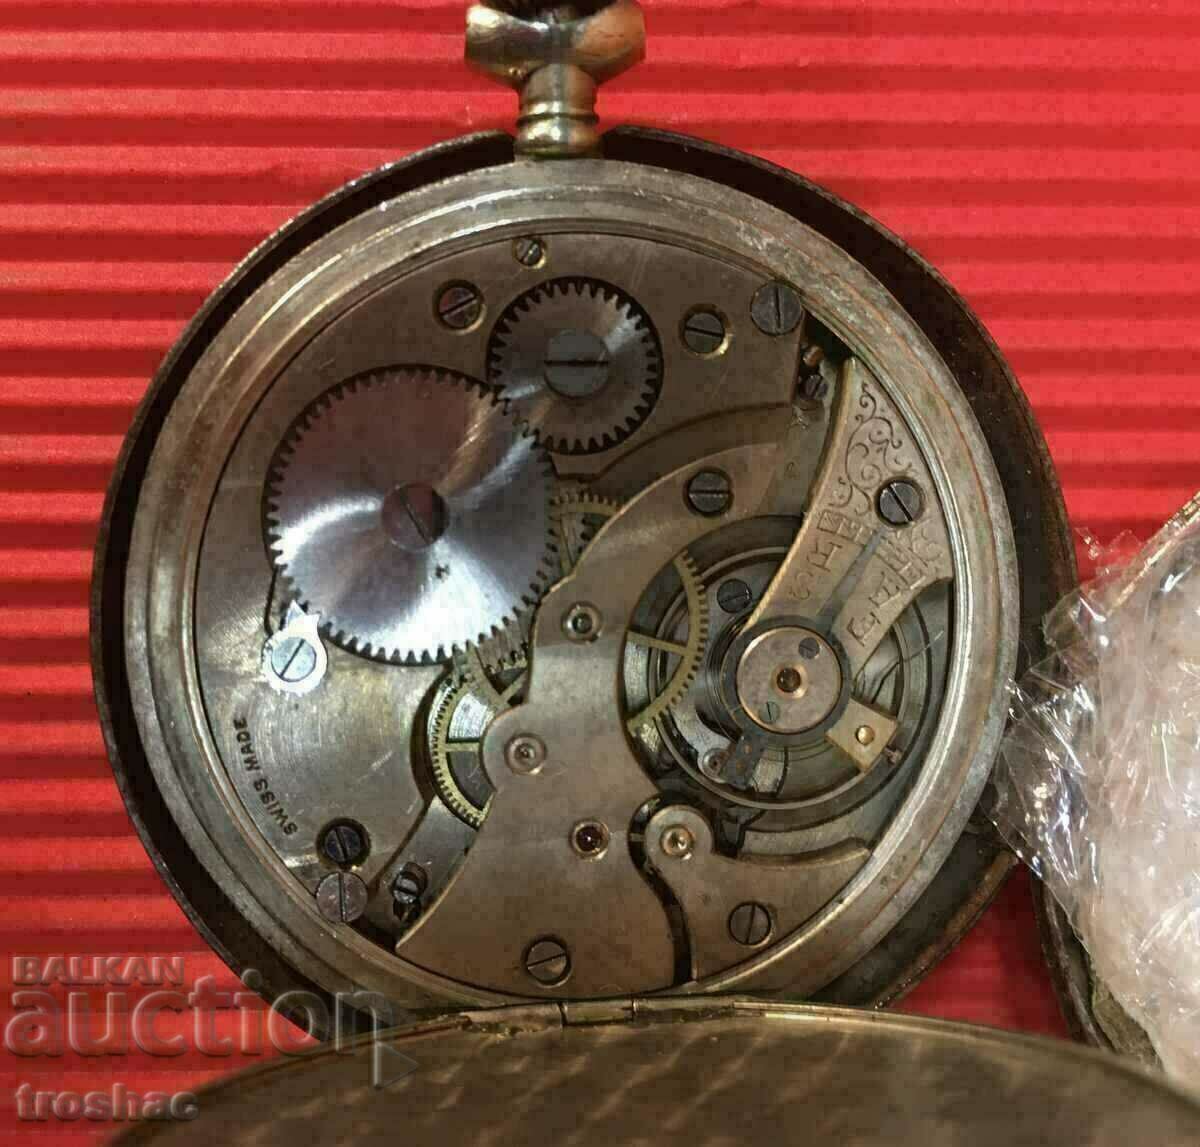 Ελβετικό ρολόι τσέπης λειτουργεί τέλεια